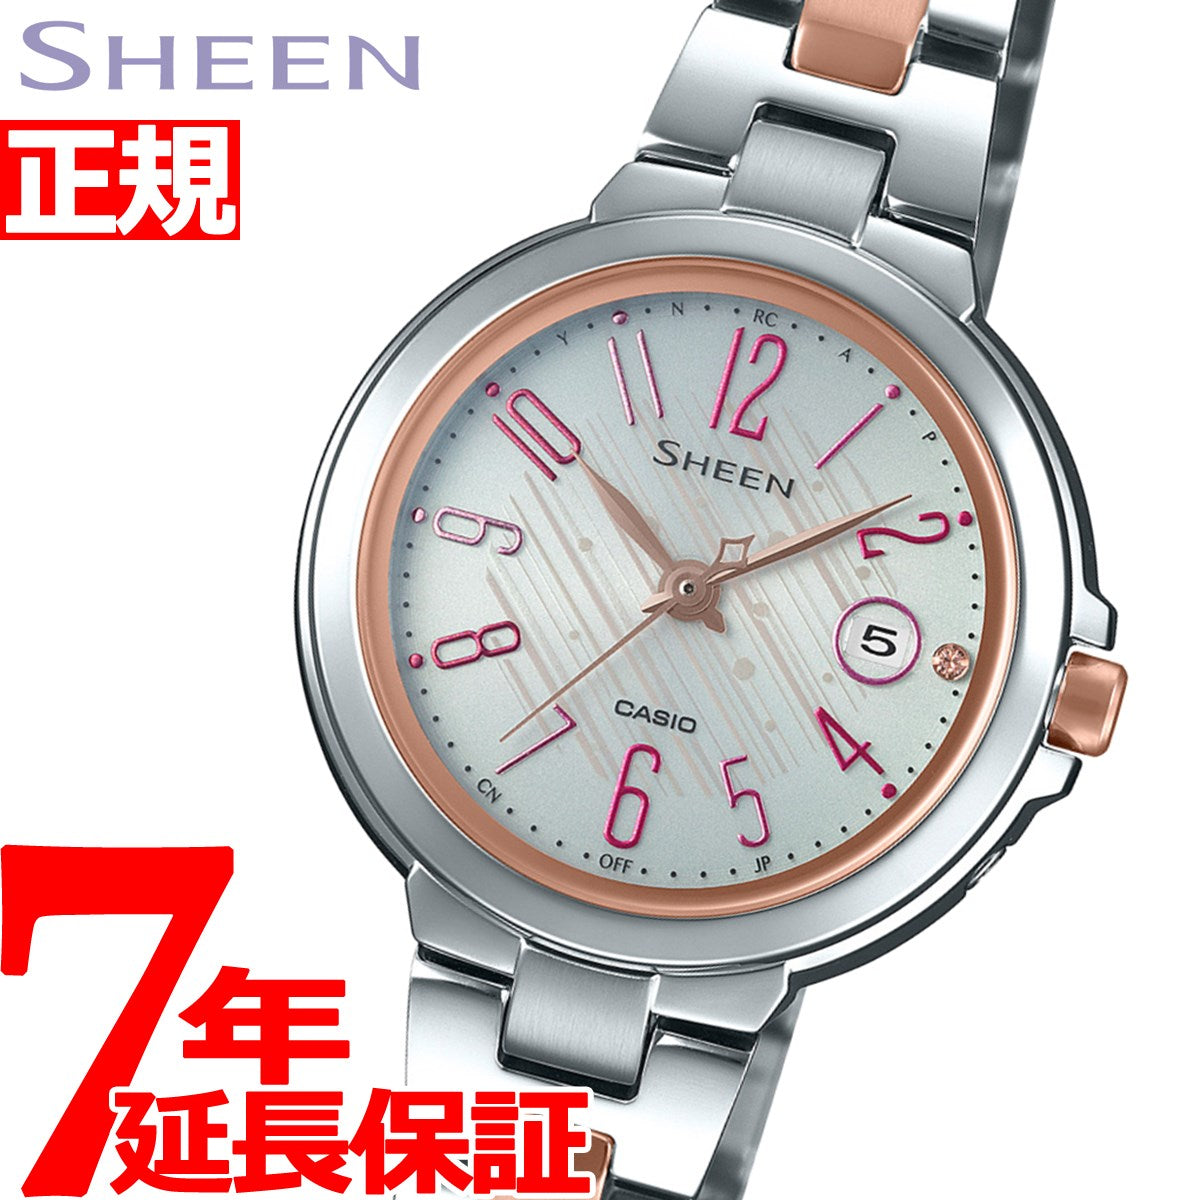 カシオ シーン CASIO SHEEN 電波 ソーラー 電波時計 腕時計 レディース 